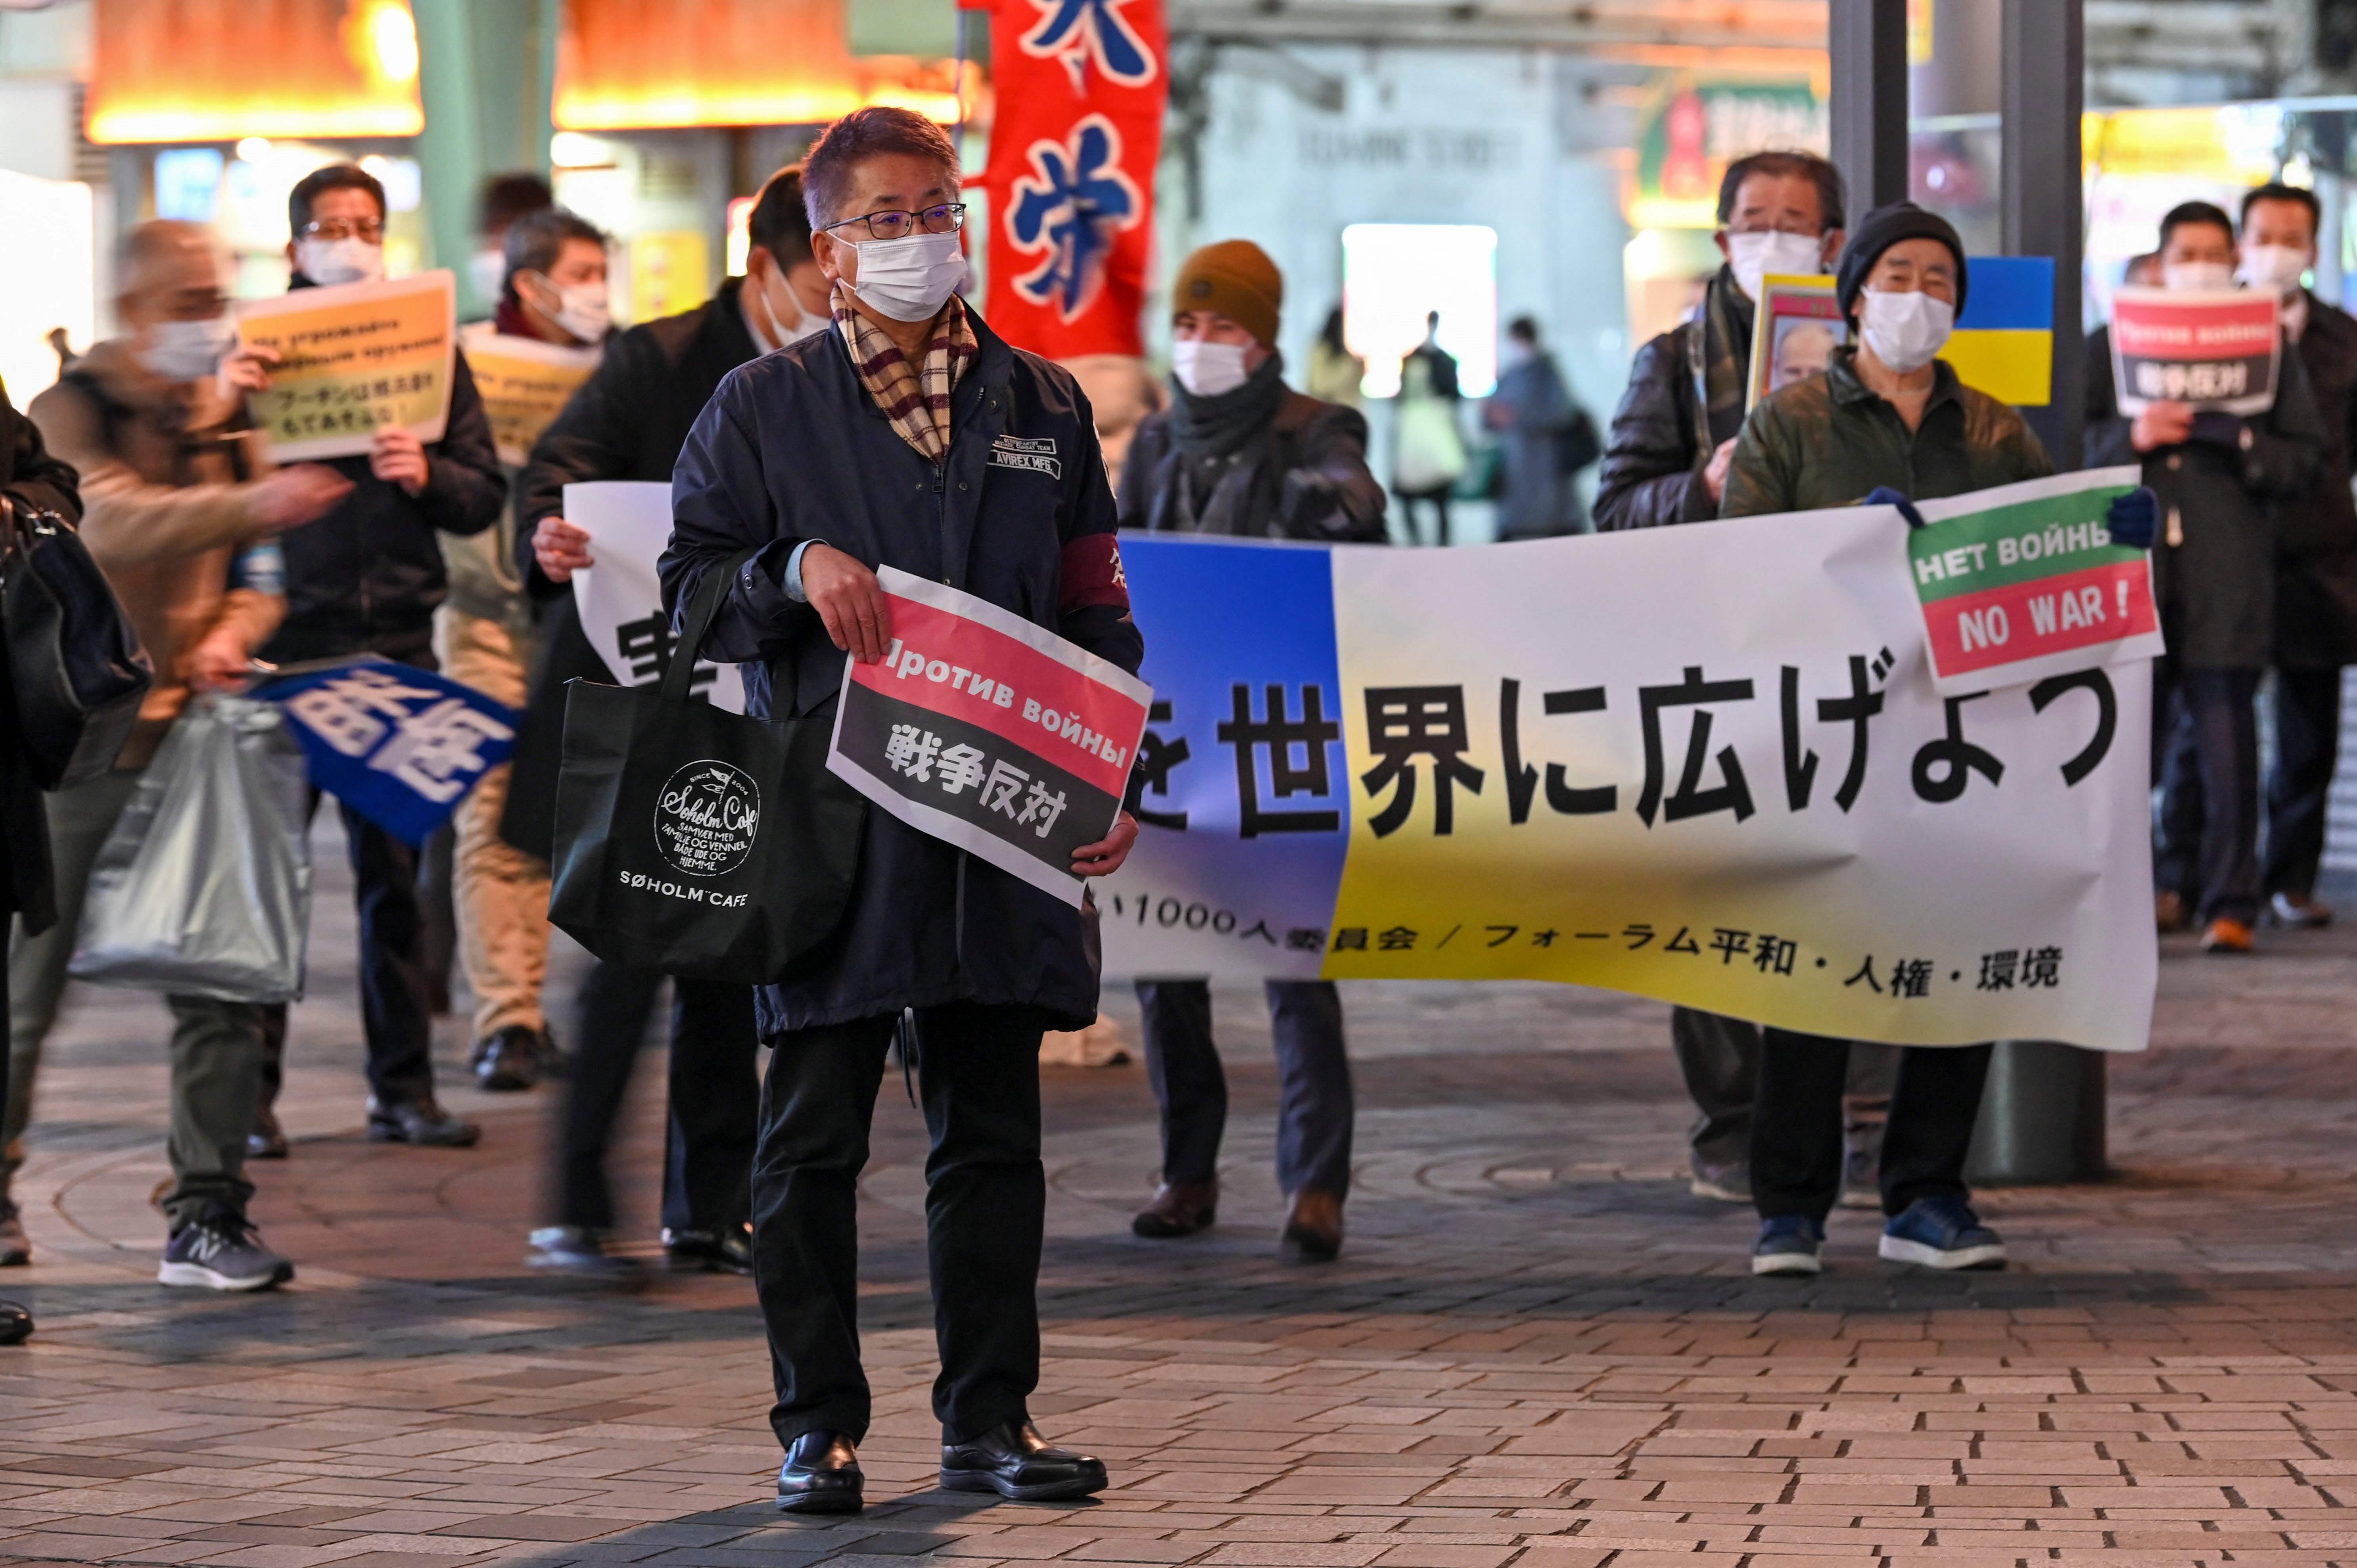 Un hombre sostiene una pancarta con el eslogan de las protestas “contra la guerra”, en una protesta contra la invasión rusa de Ucrania en Tokio